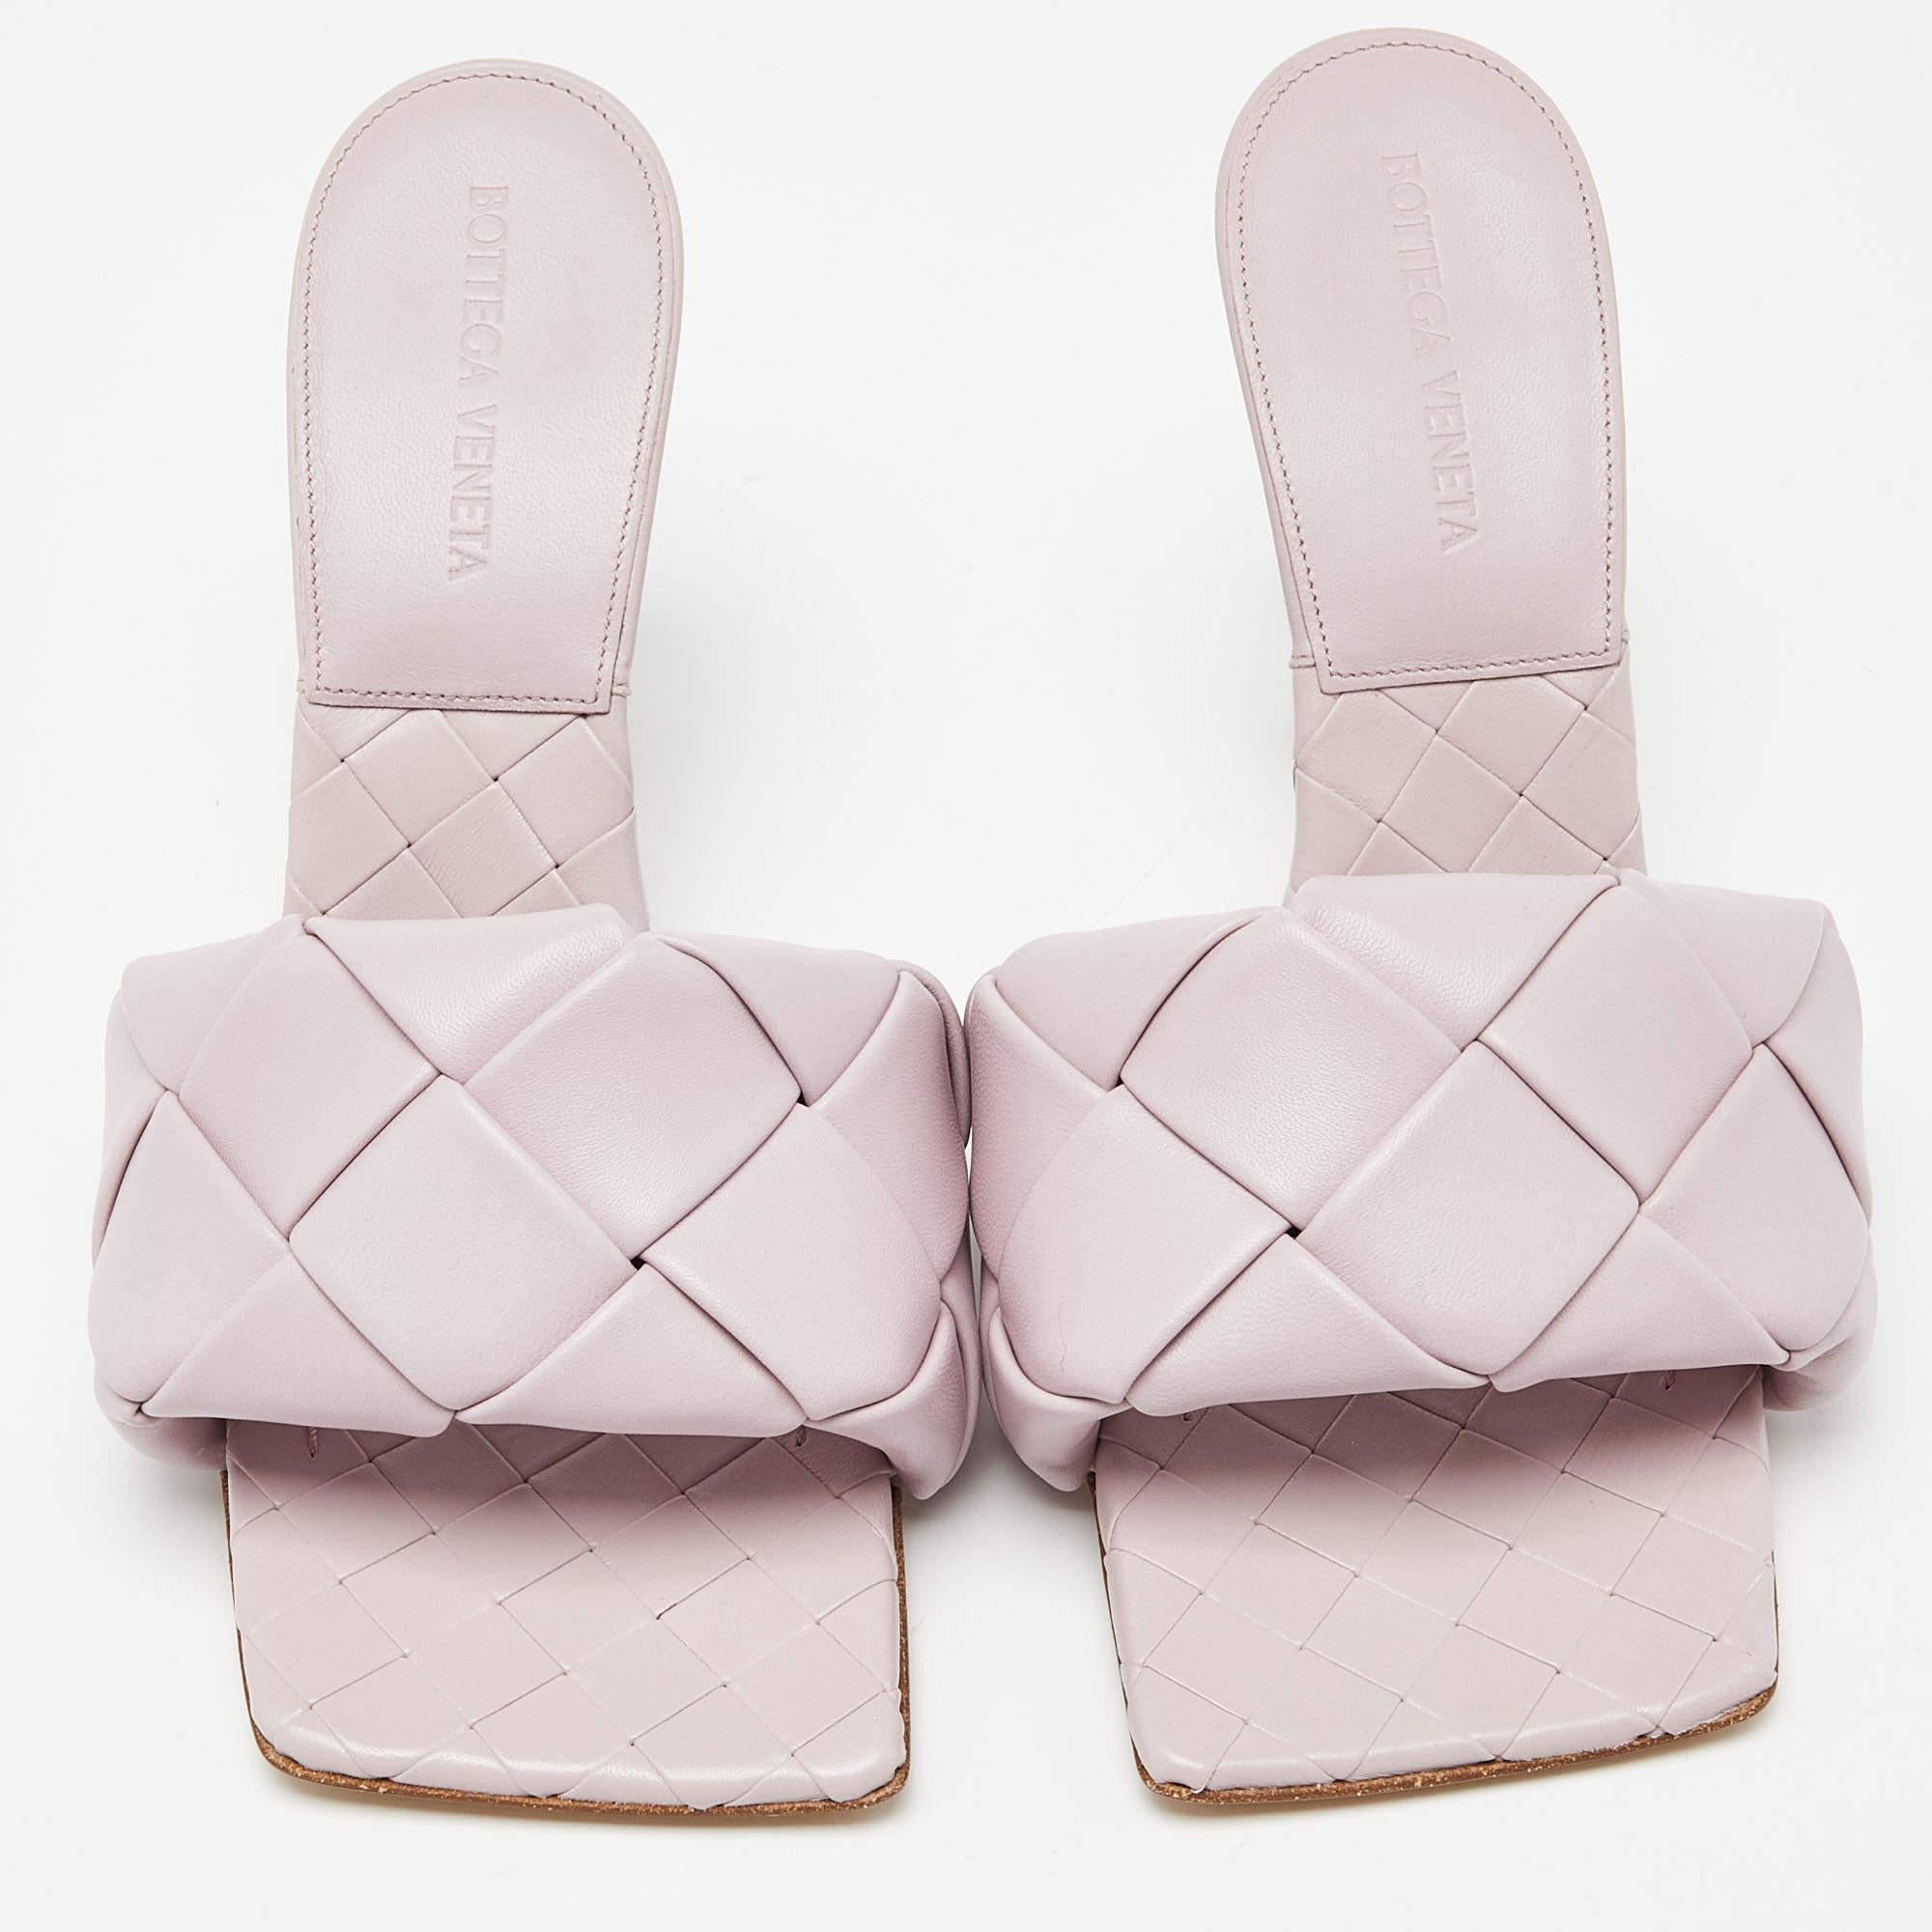 Figurant parmi les modèles les plus vendus, les sandales Lido de Bottega Veneta ornent les pieds des célébrités et influenceurs les plus en vue. Ces beautés ont été confectionnées en cuir dans une teinte COLOR, puis montées sur des talons. Portez